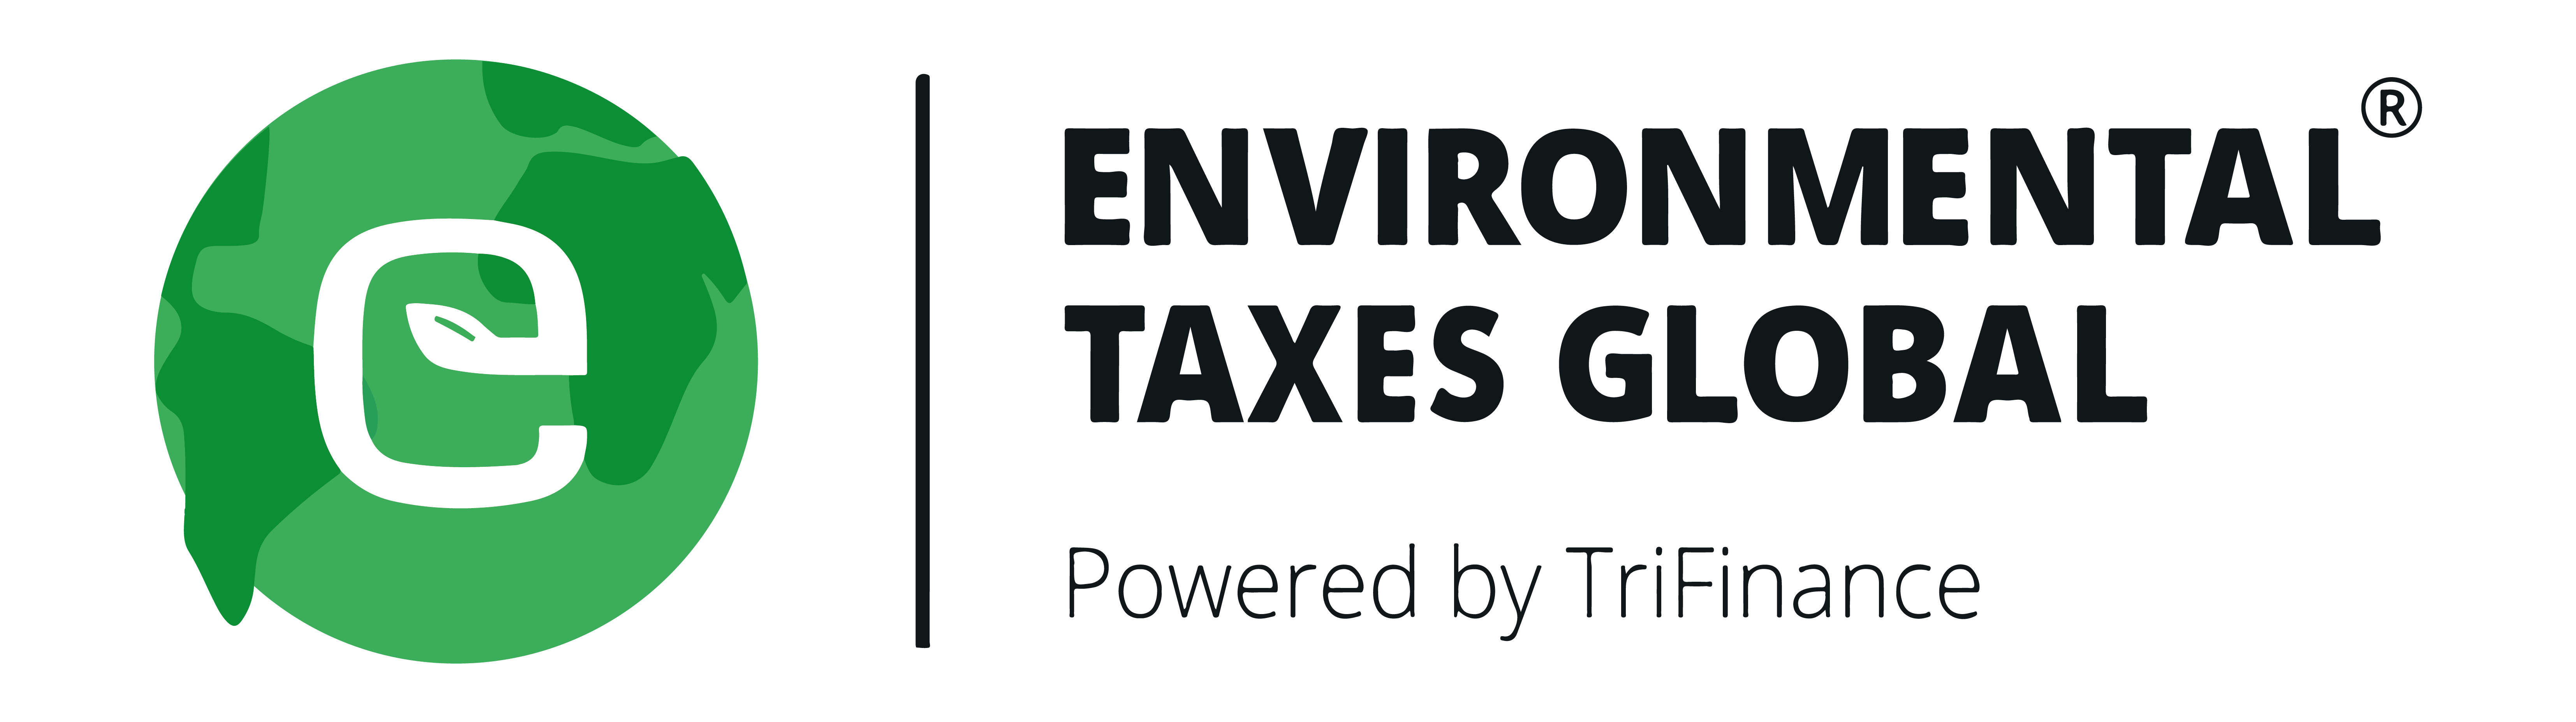 www.environmentaltaxes.com